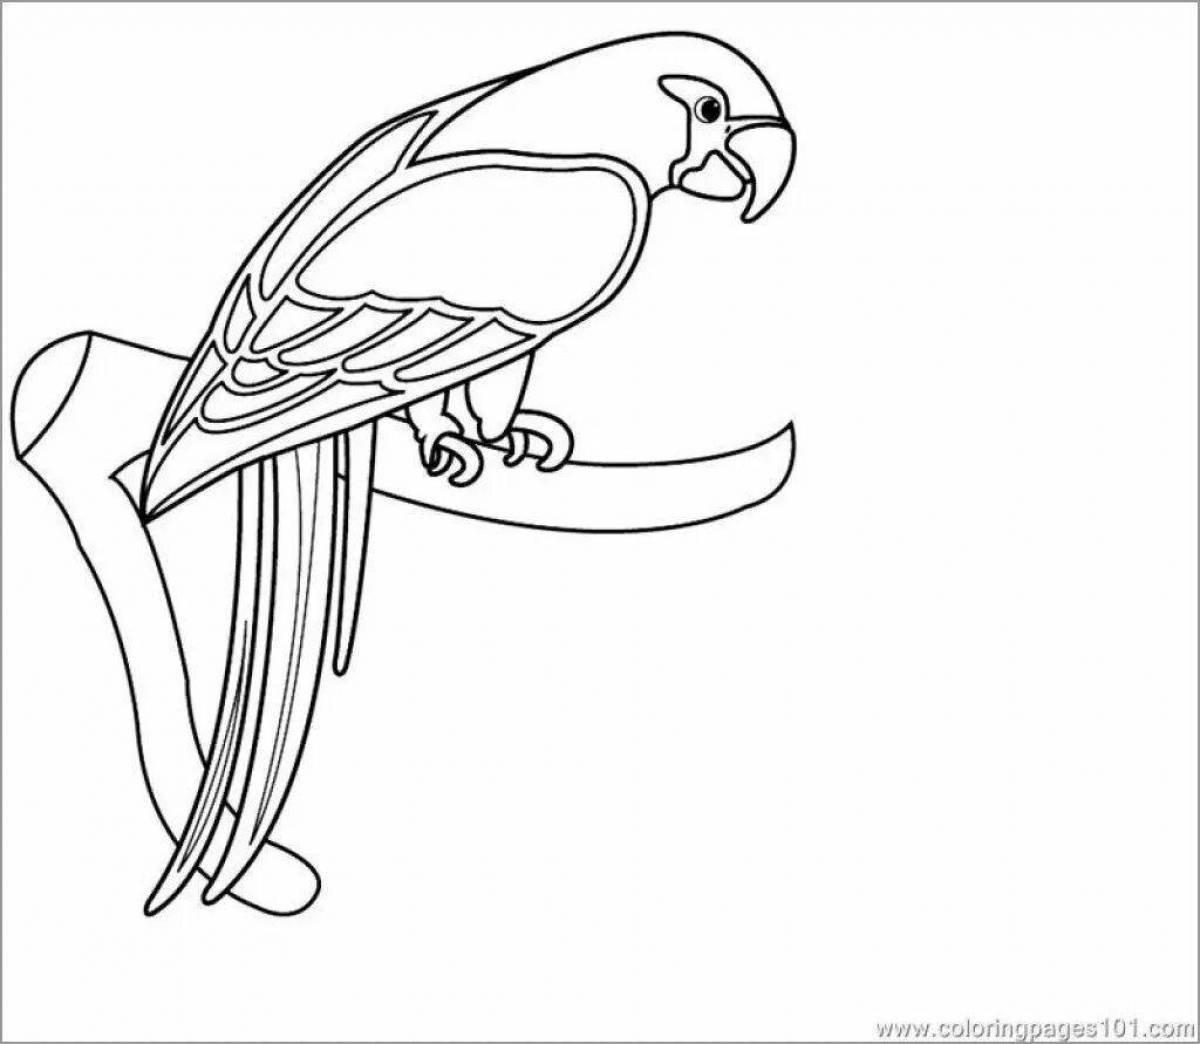 Привлекательный рисунок попугая для детей